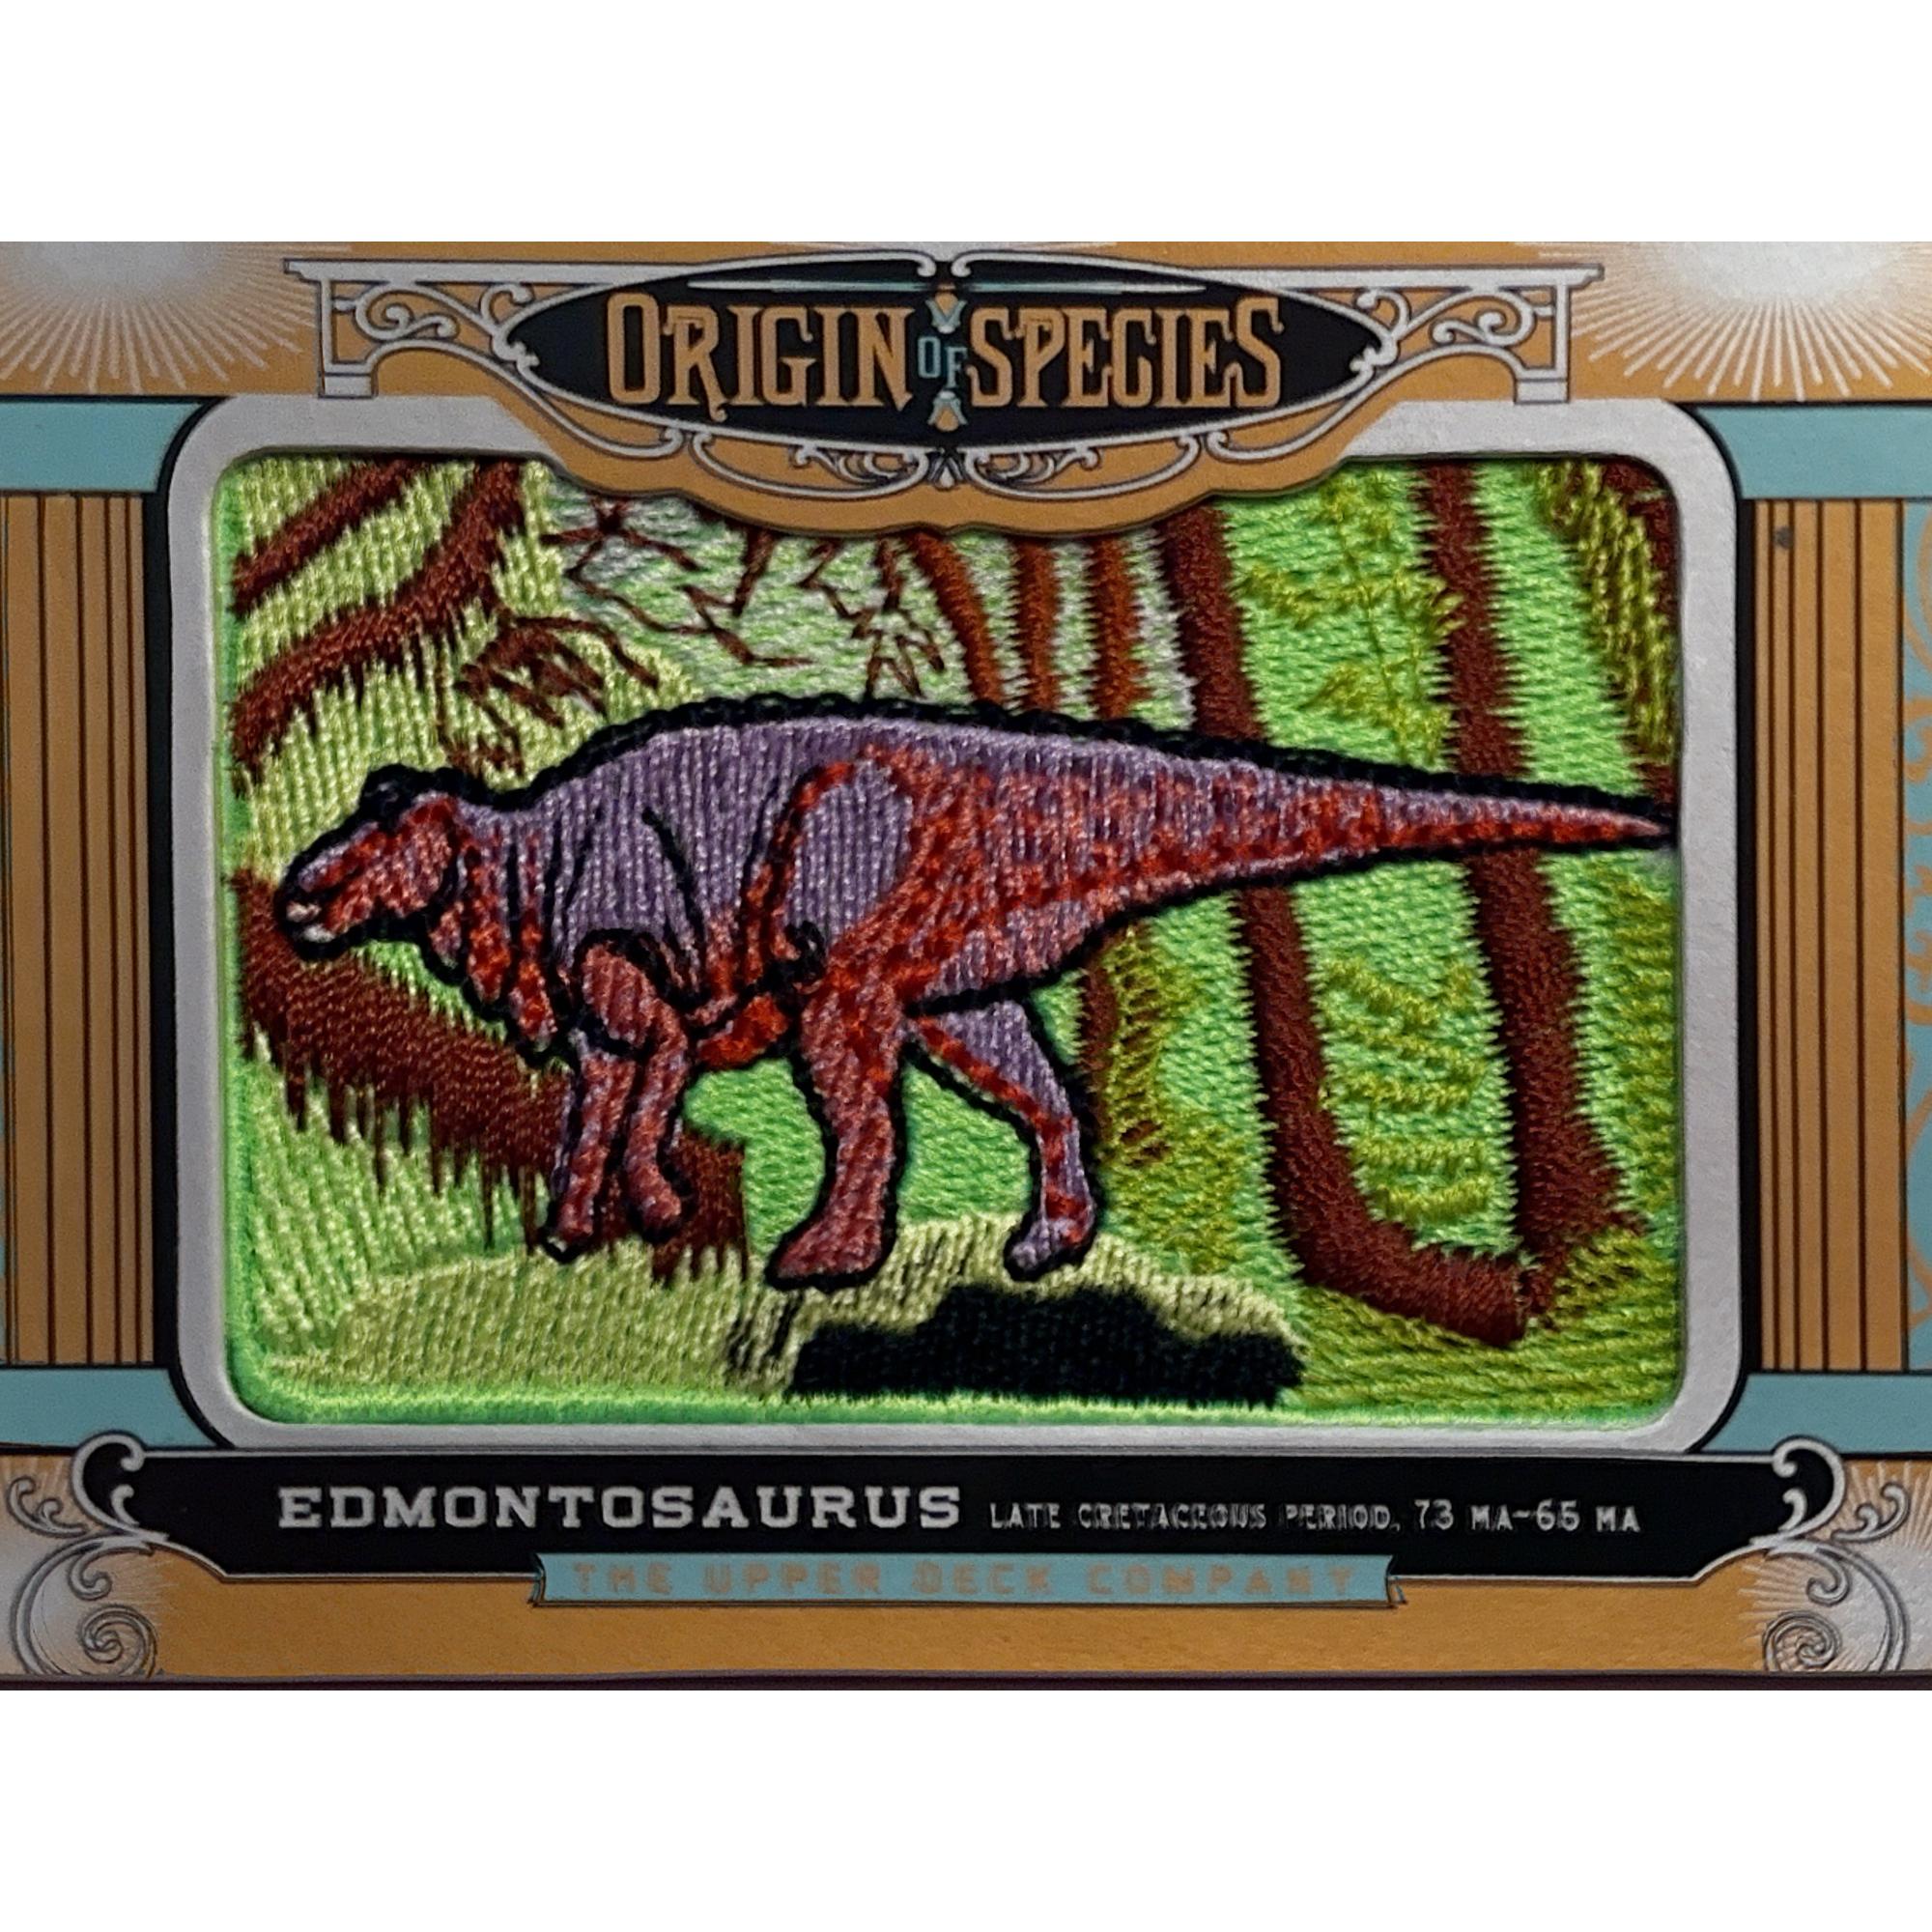 Upper deck, Edmontosaurus patch Prehistoric Online